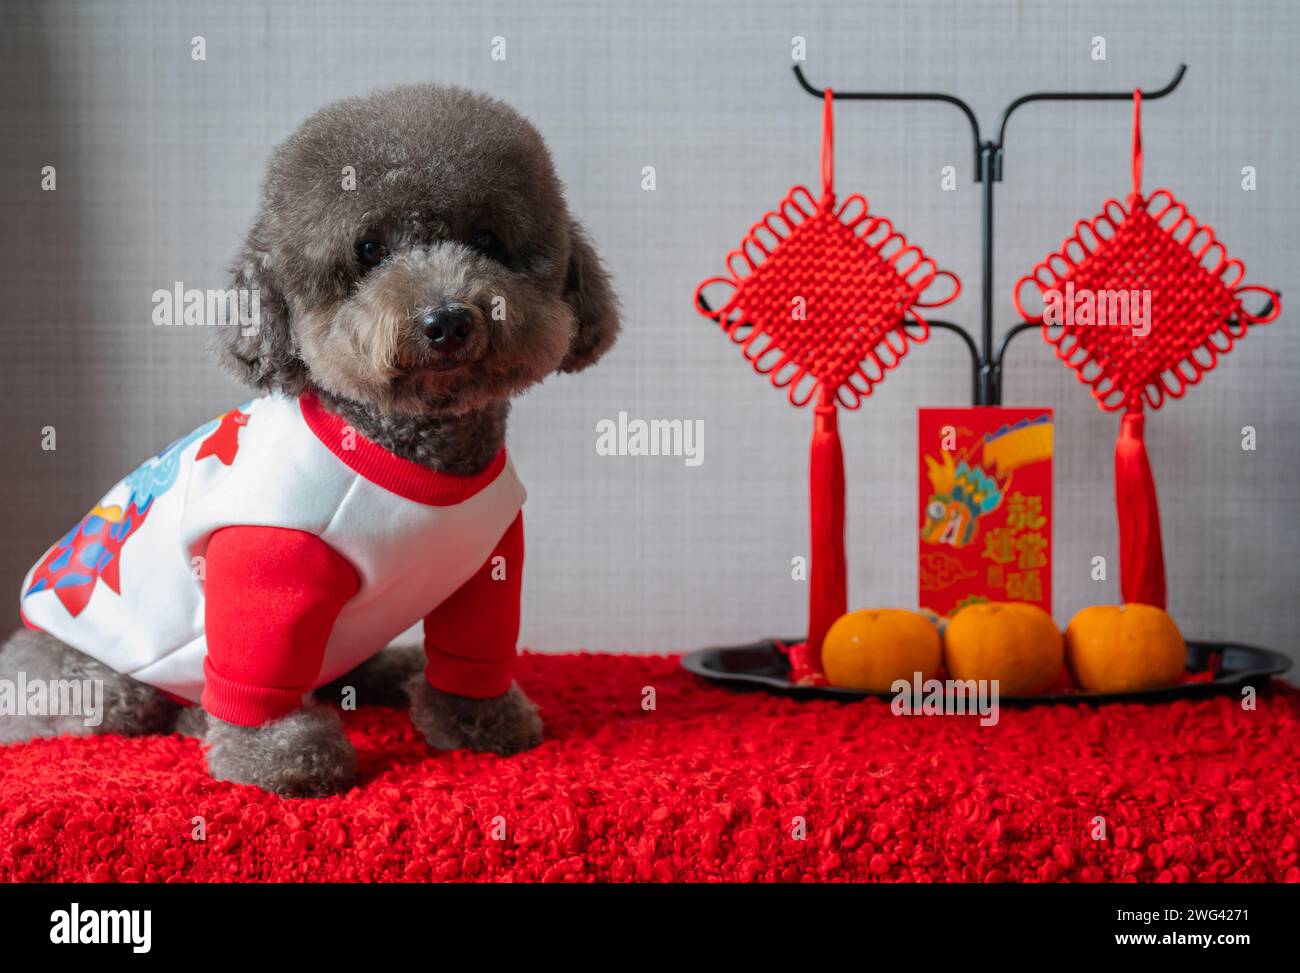 Adorabile cagnolino nero che indossa un panno per il capodanno cinese con pendente, busta rossa o ang pao (le parole significano drago e buona fortuna) e arance Foto Stock